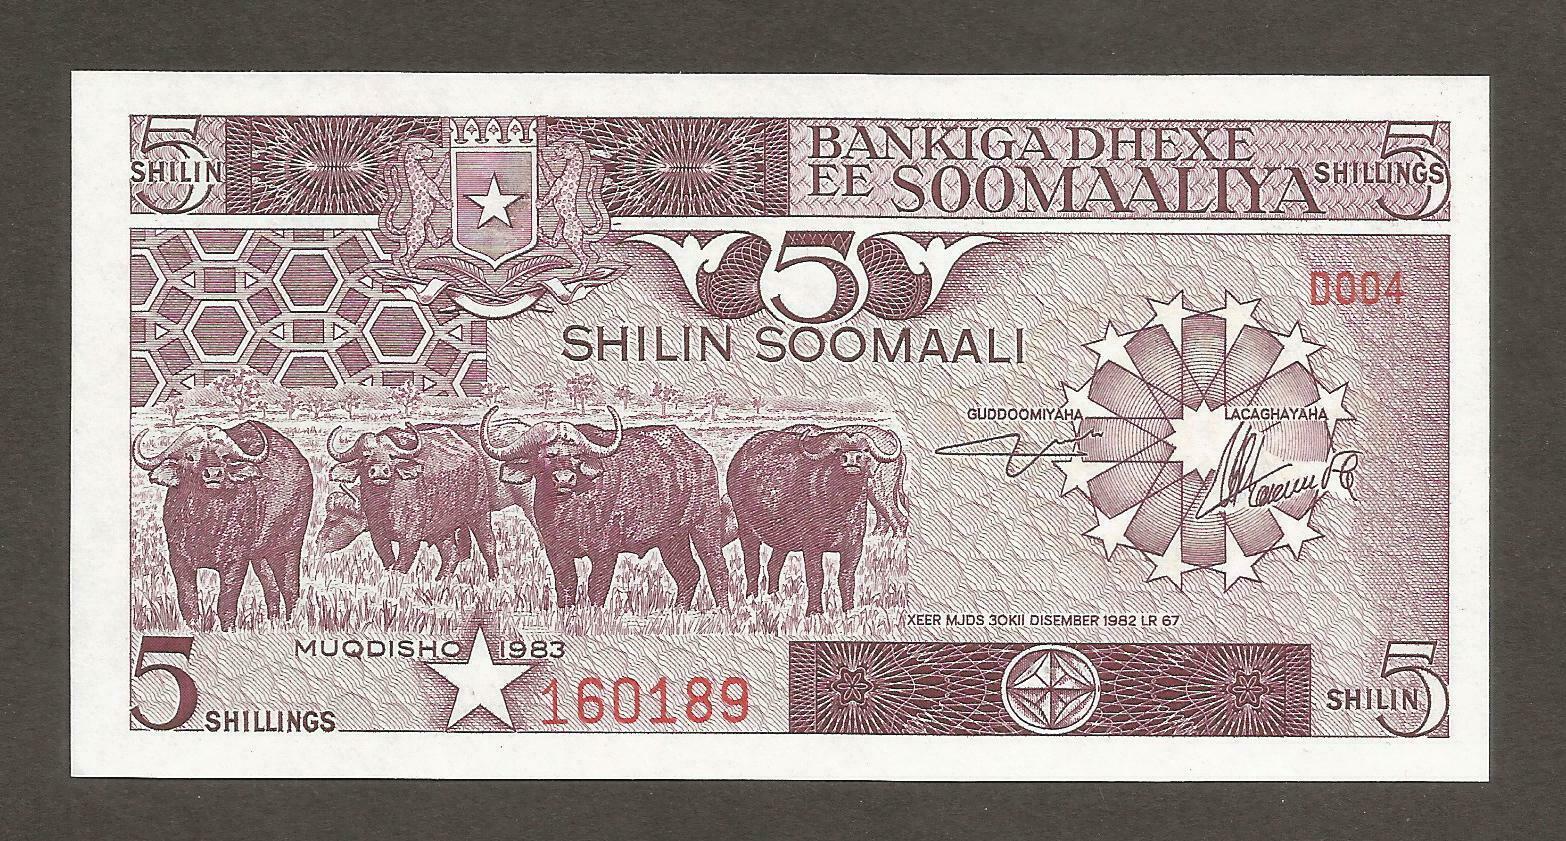 Somalia 5 Shillings 1983; Unc; P-31a; L-b306a; Buffalo; Banana Harvest